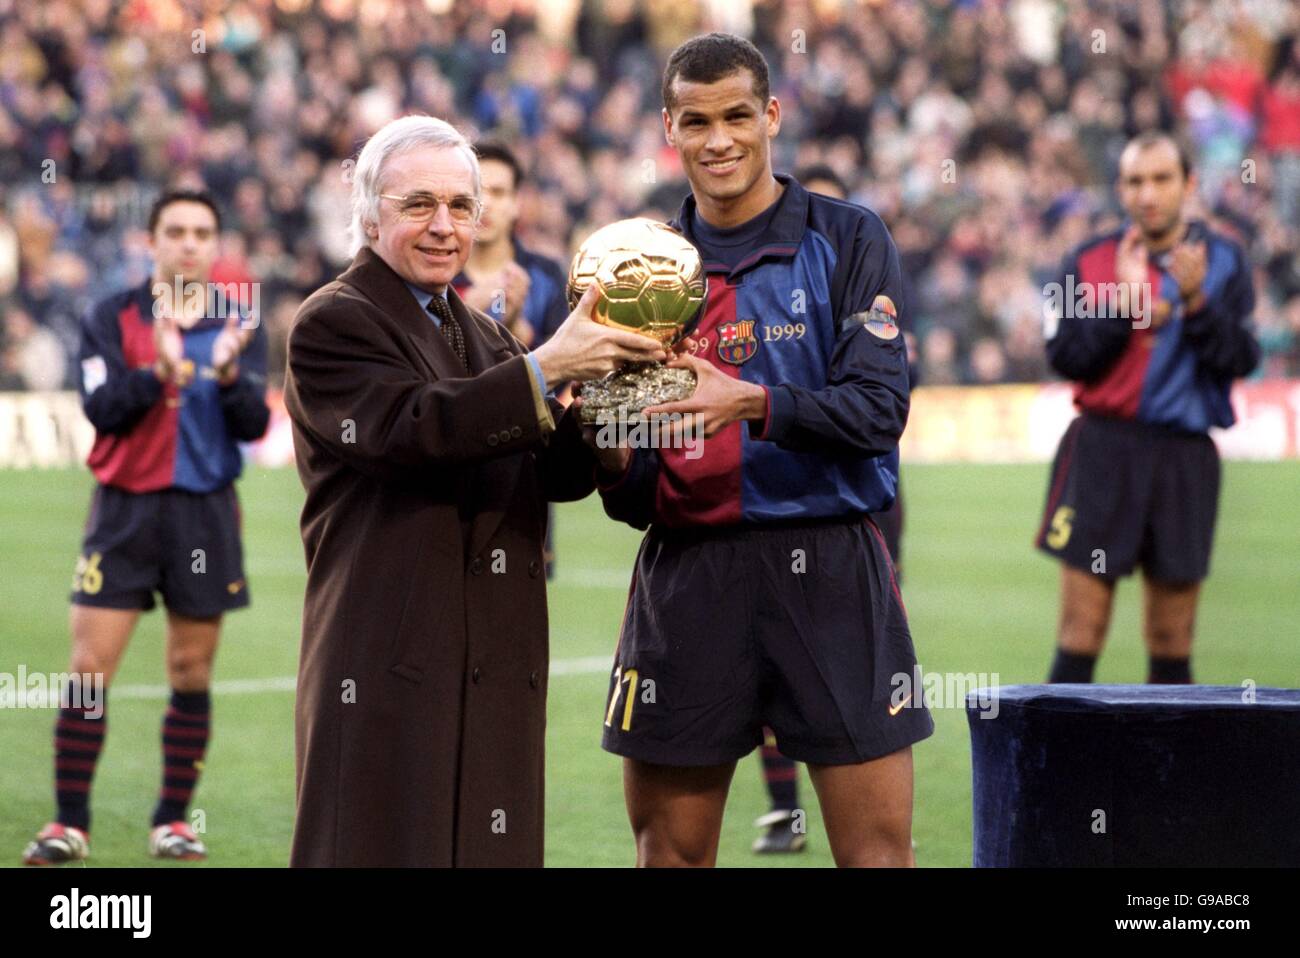 Rivaldo de Barcelone (à droite) reçoit son joueur du monde de l'année prix Banque D'Images